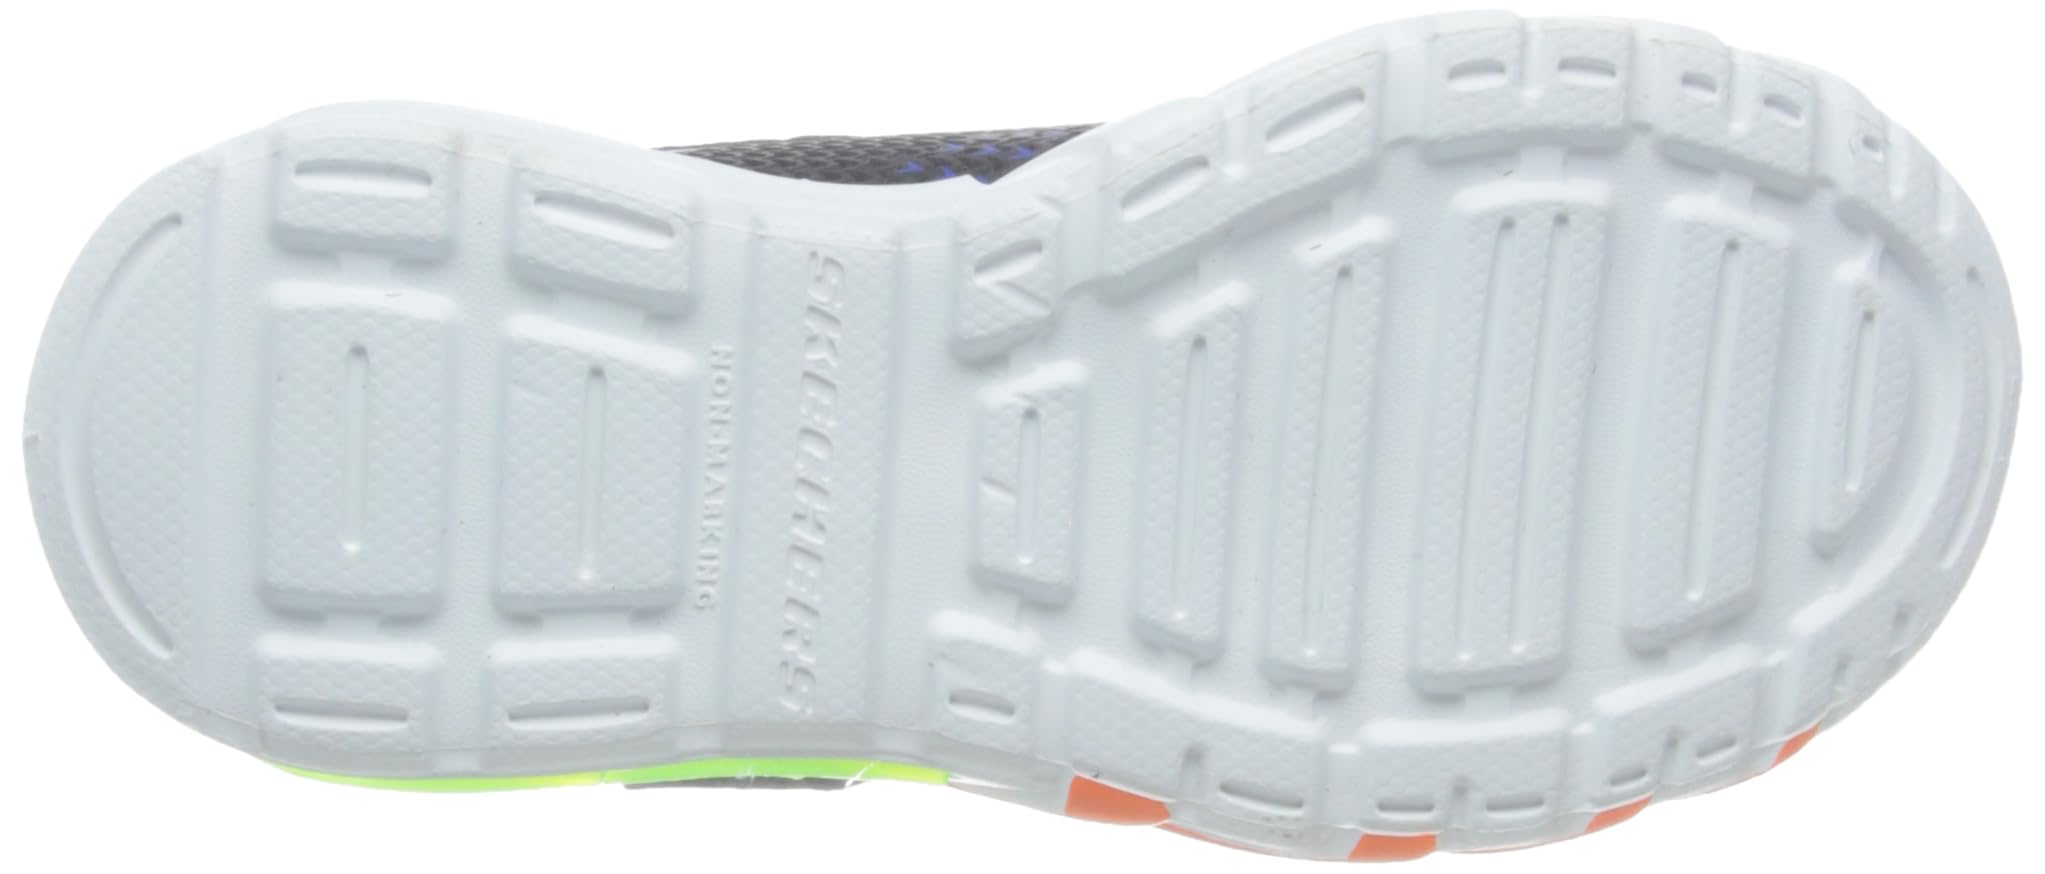 Skechers Unisex-Child Flex-Glow Bolt Sneaker